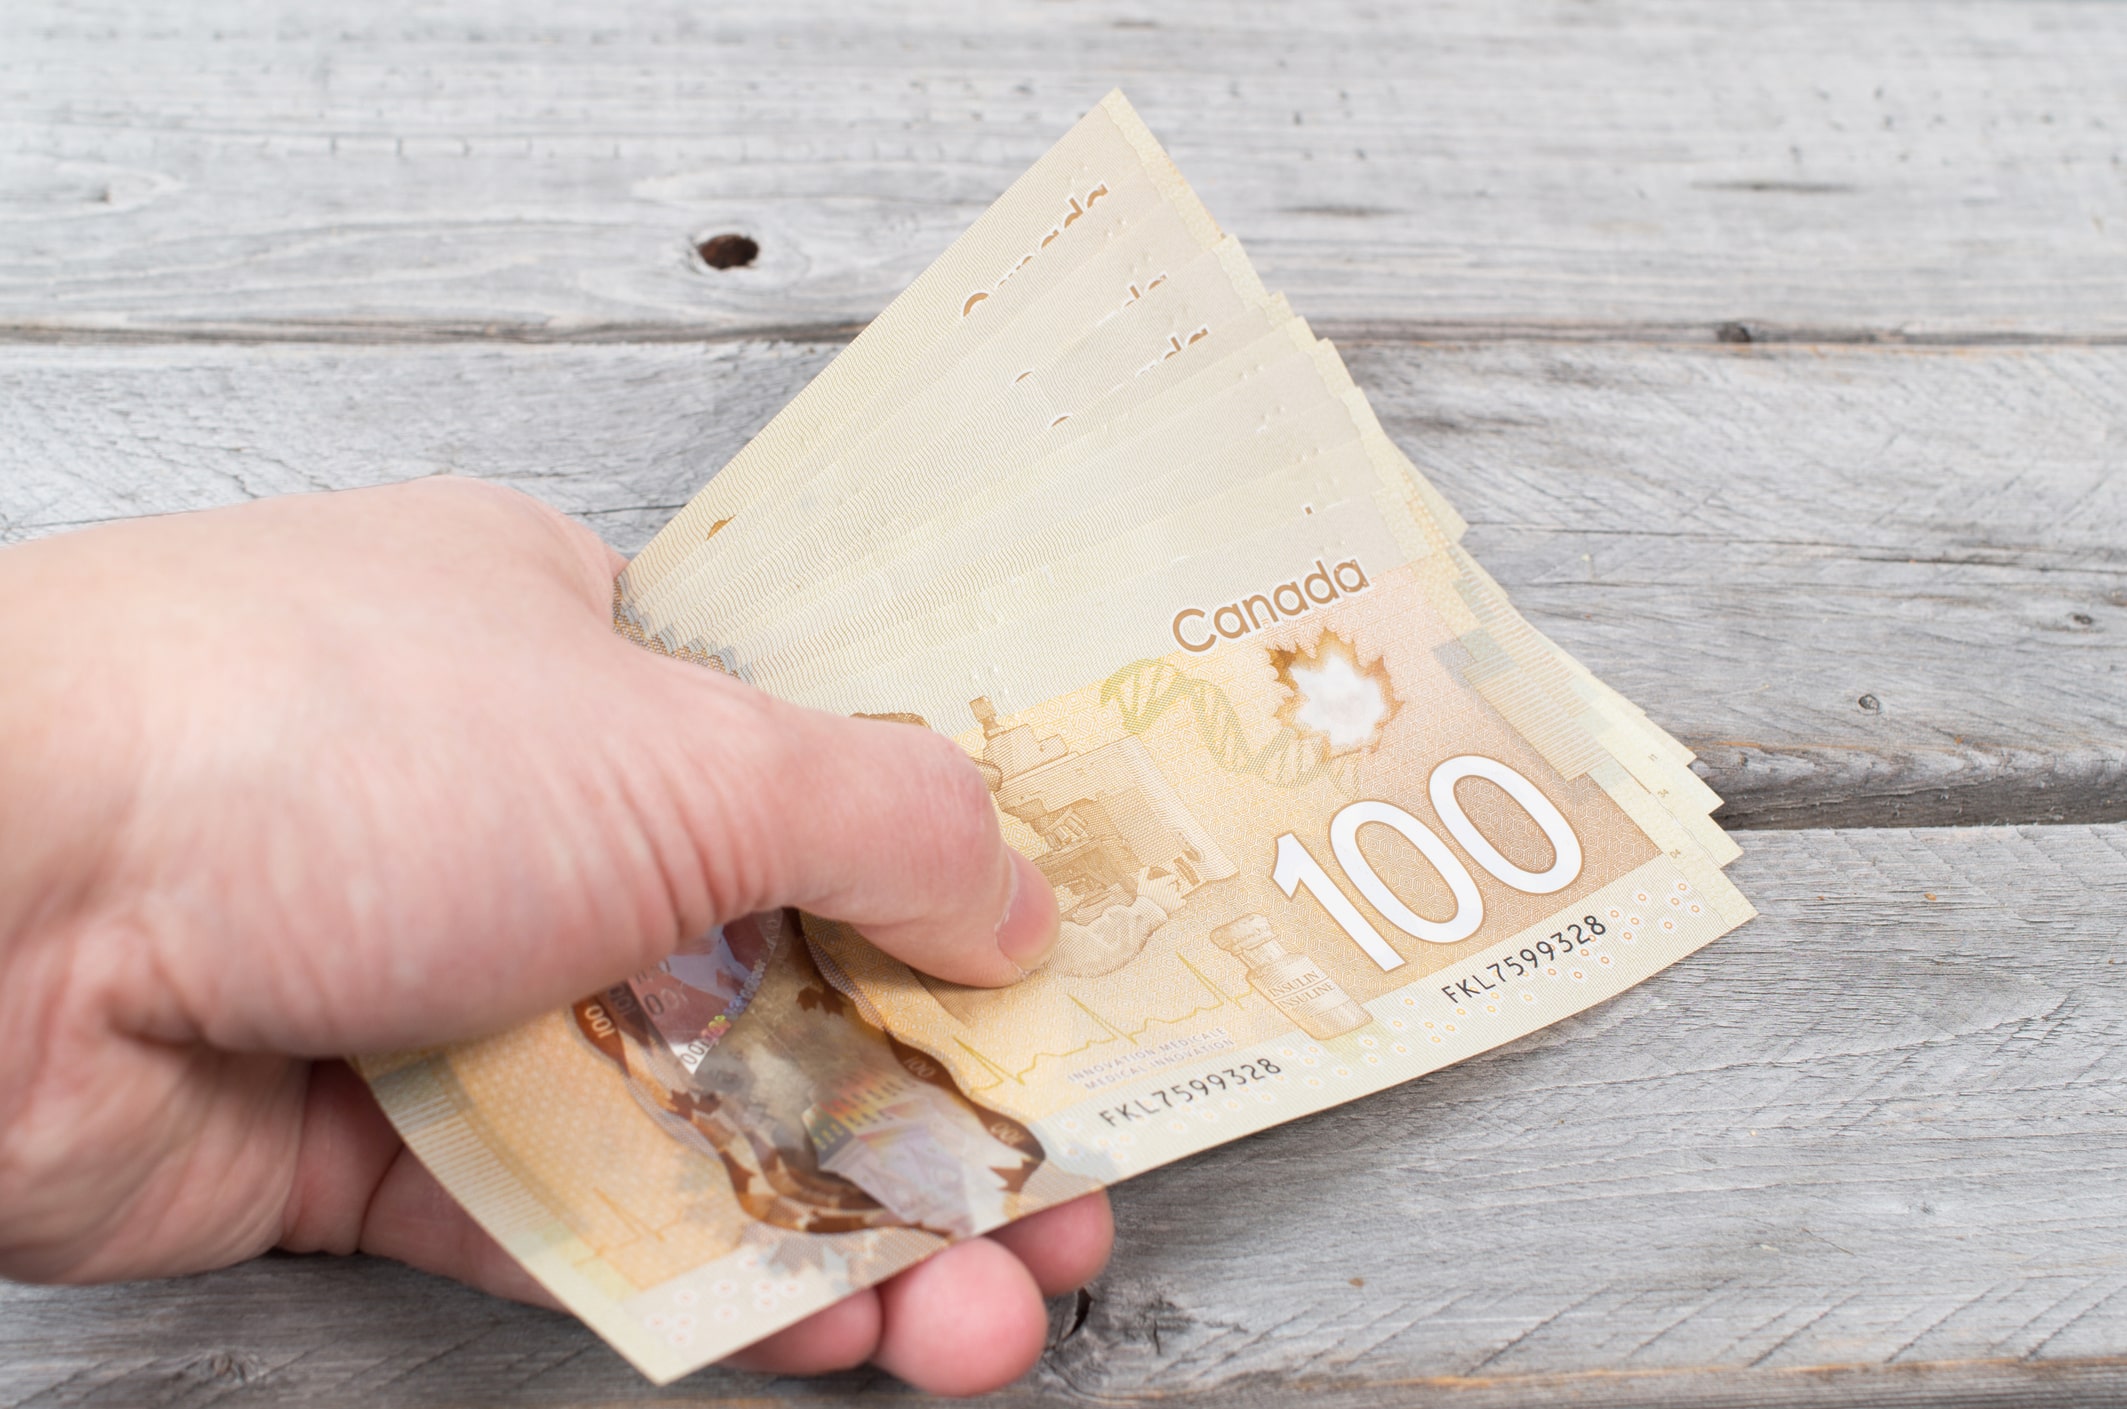 Cash in Canada